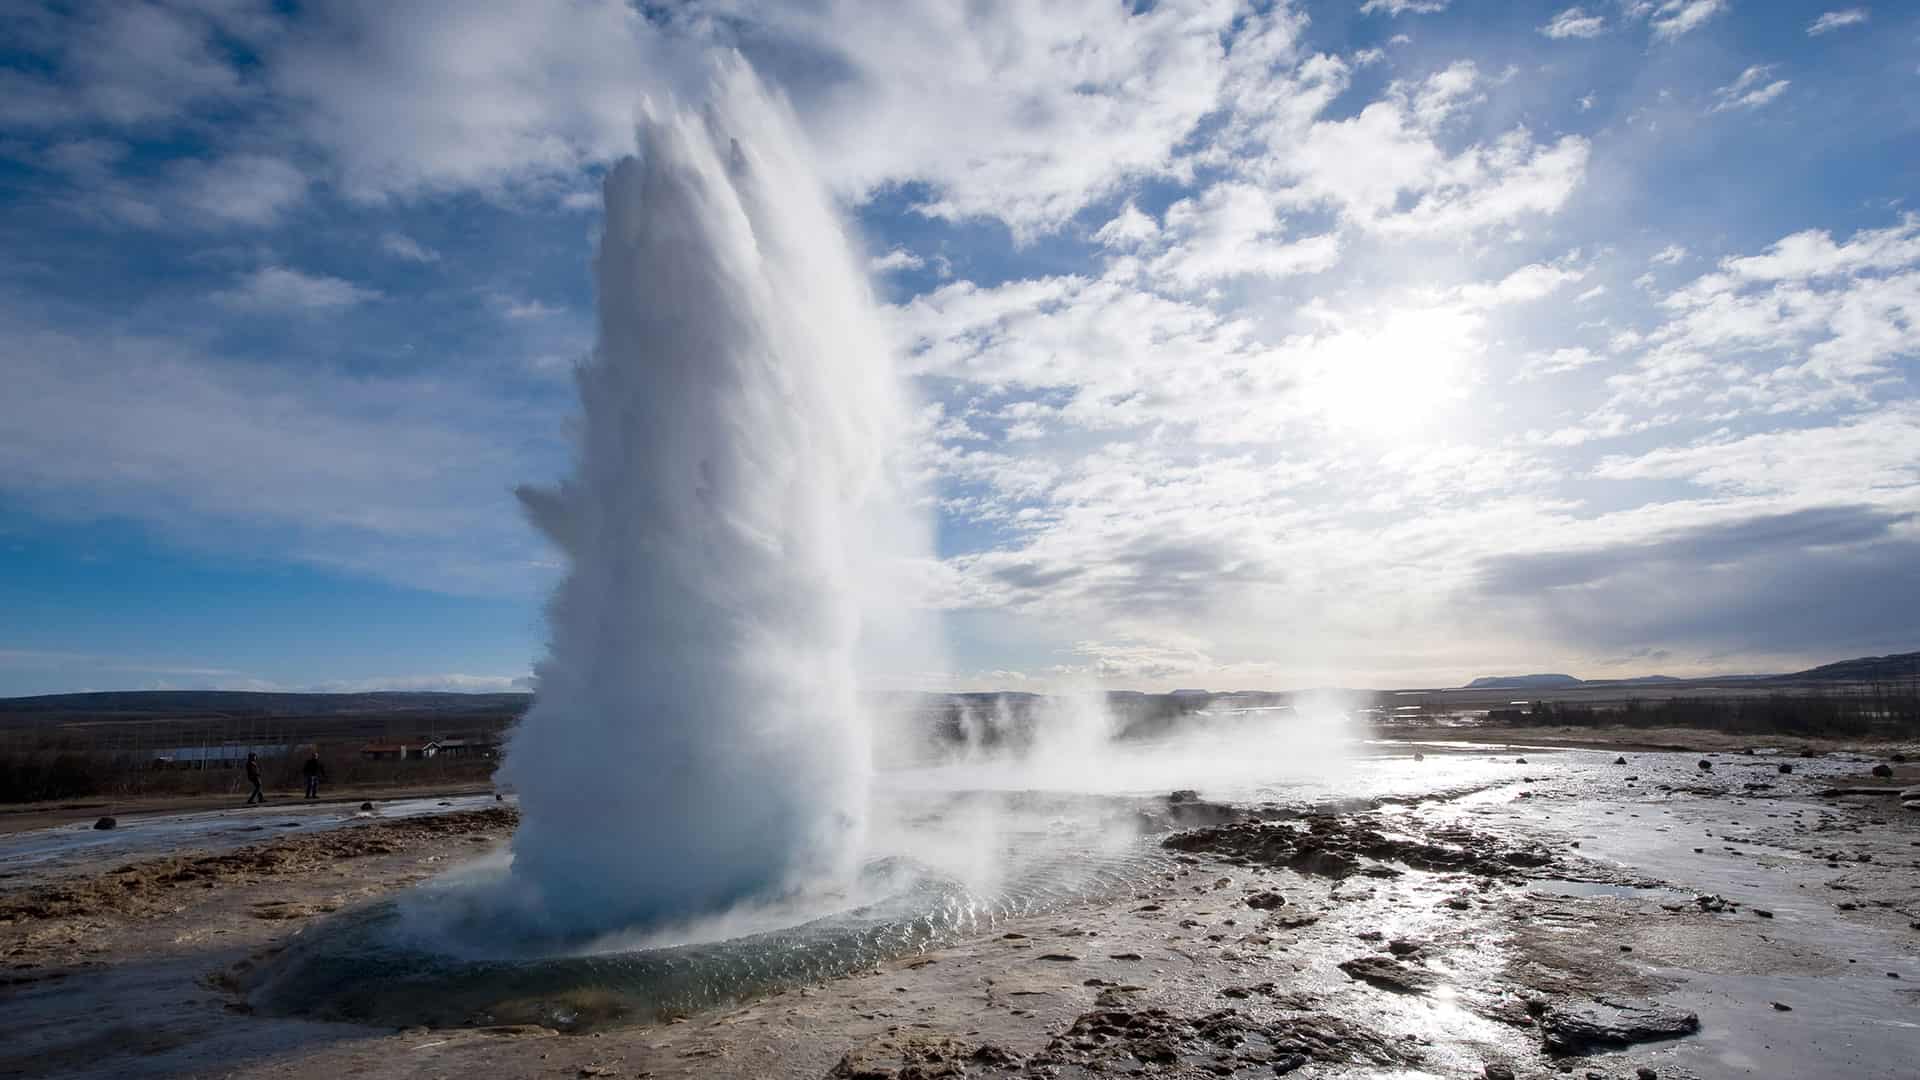 The Strokkur geyser in Iceland erupting